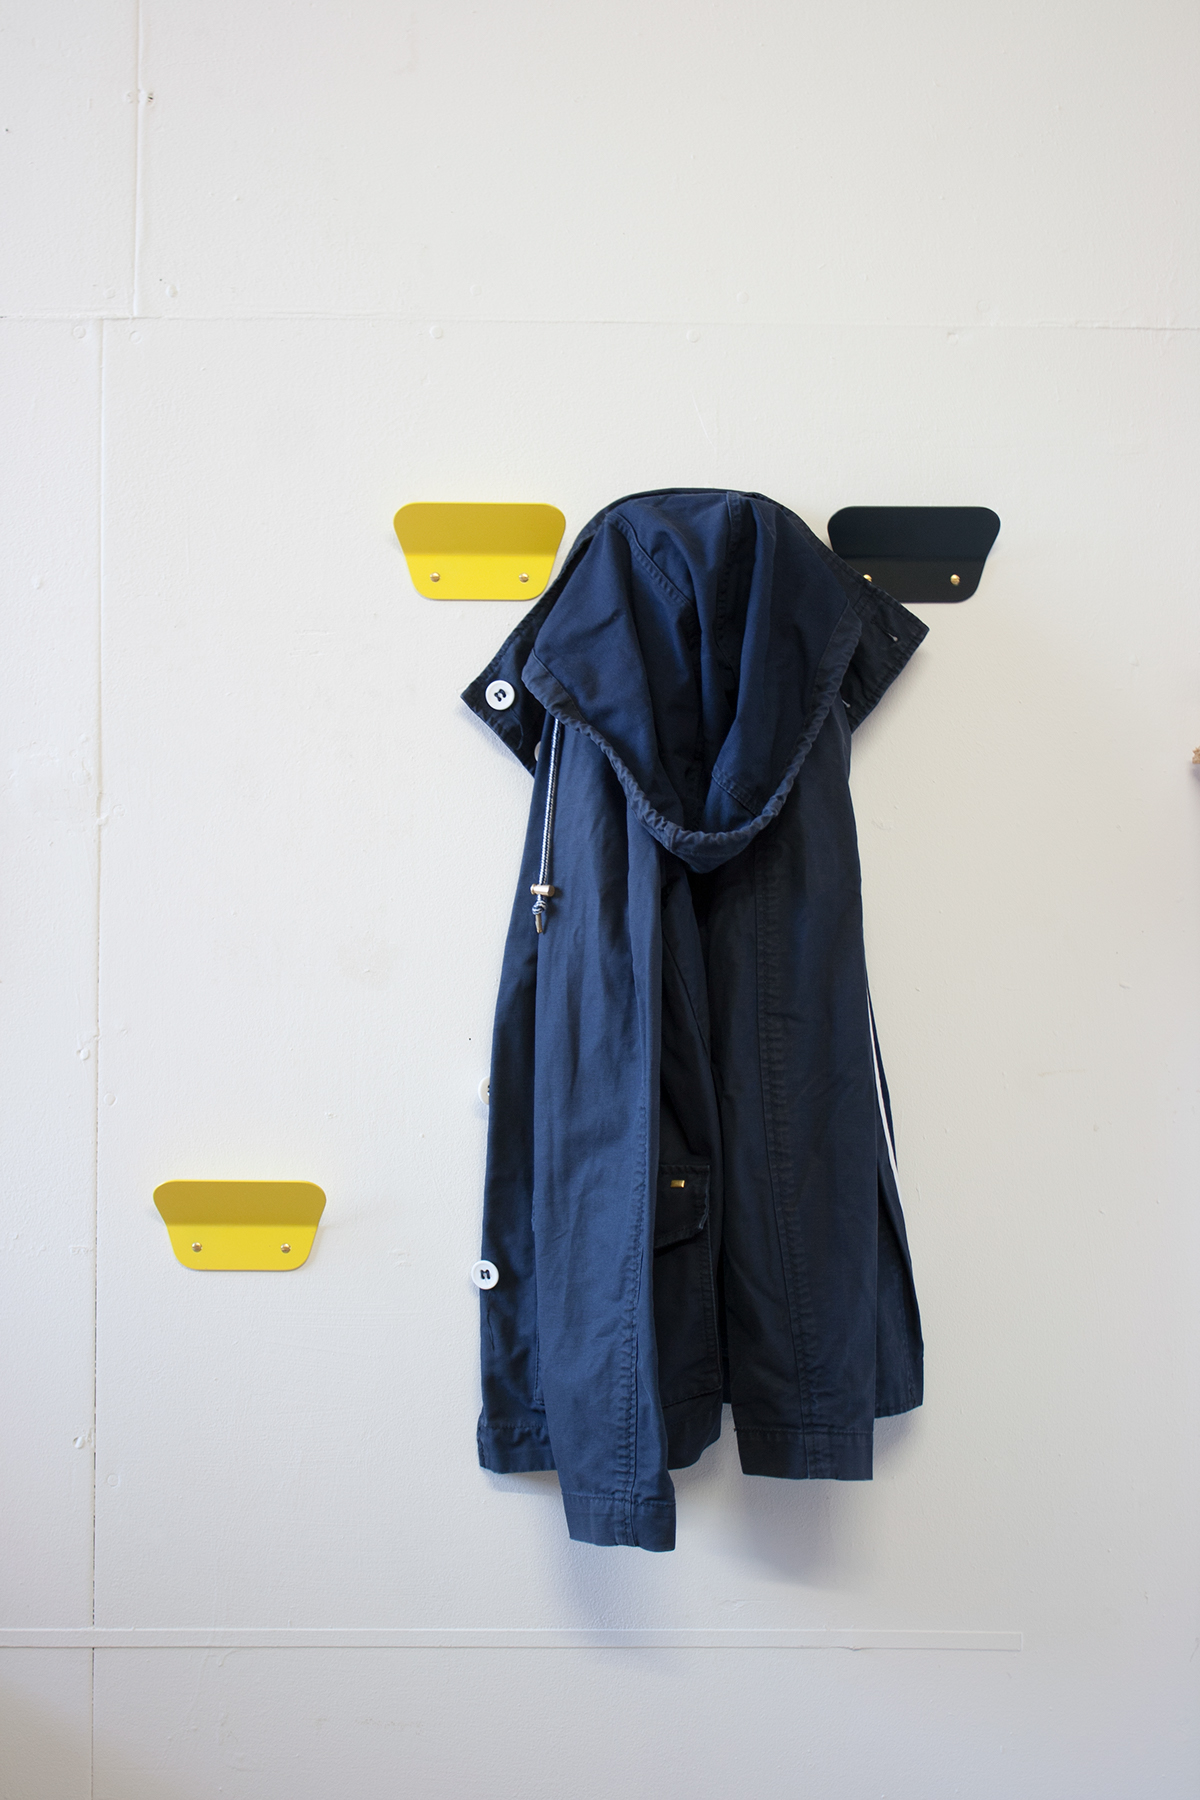 Hooks coat hanger